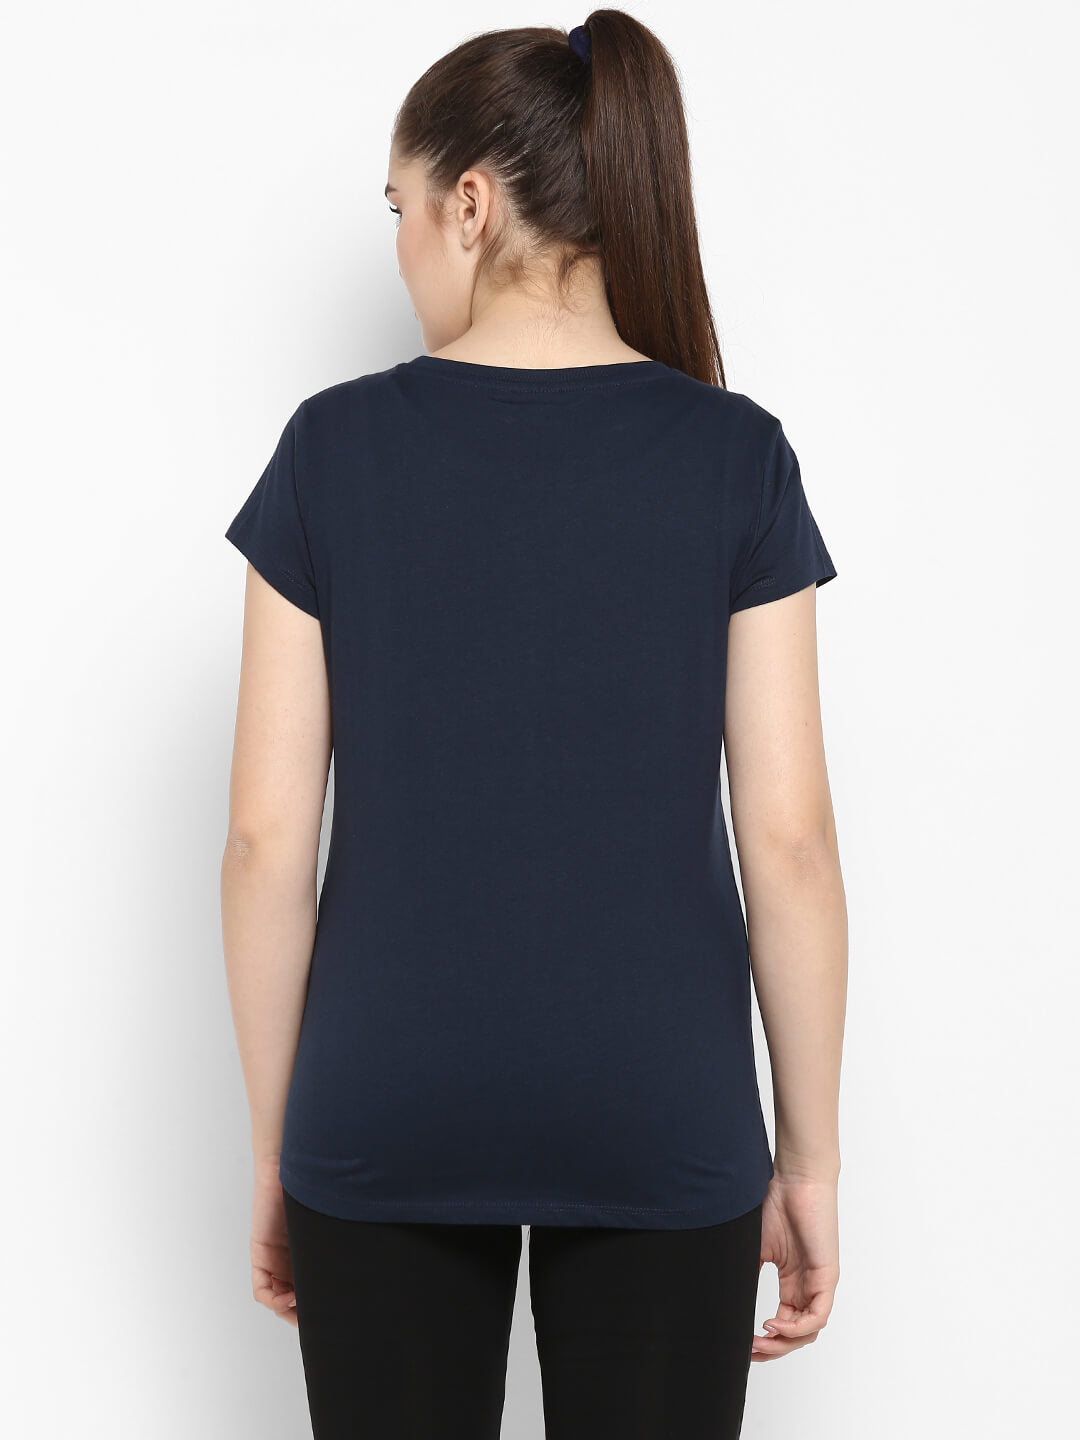 Jade Blue T-Shirt for Women